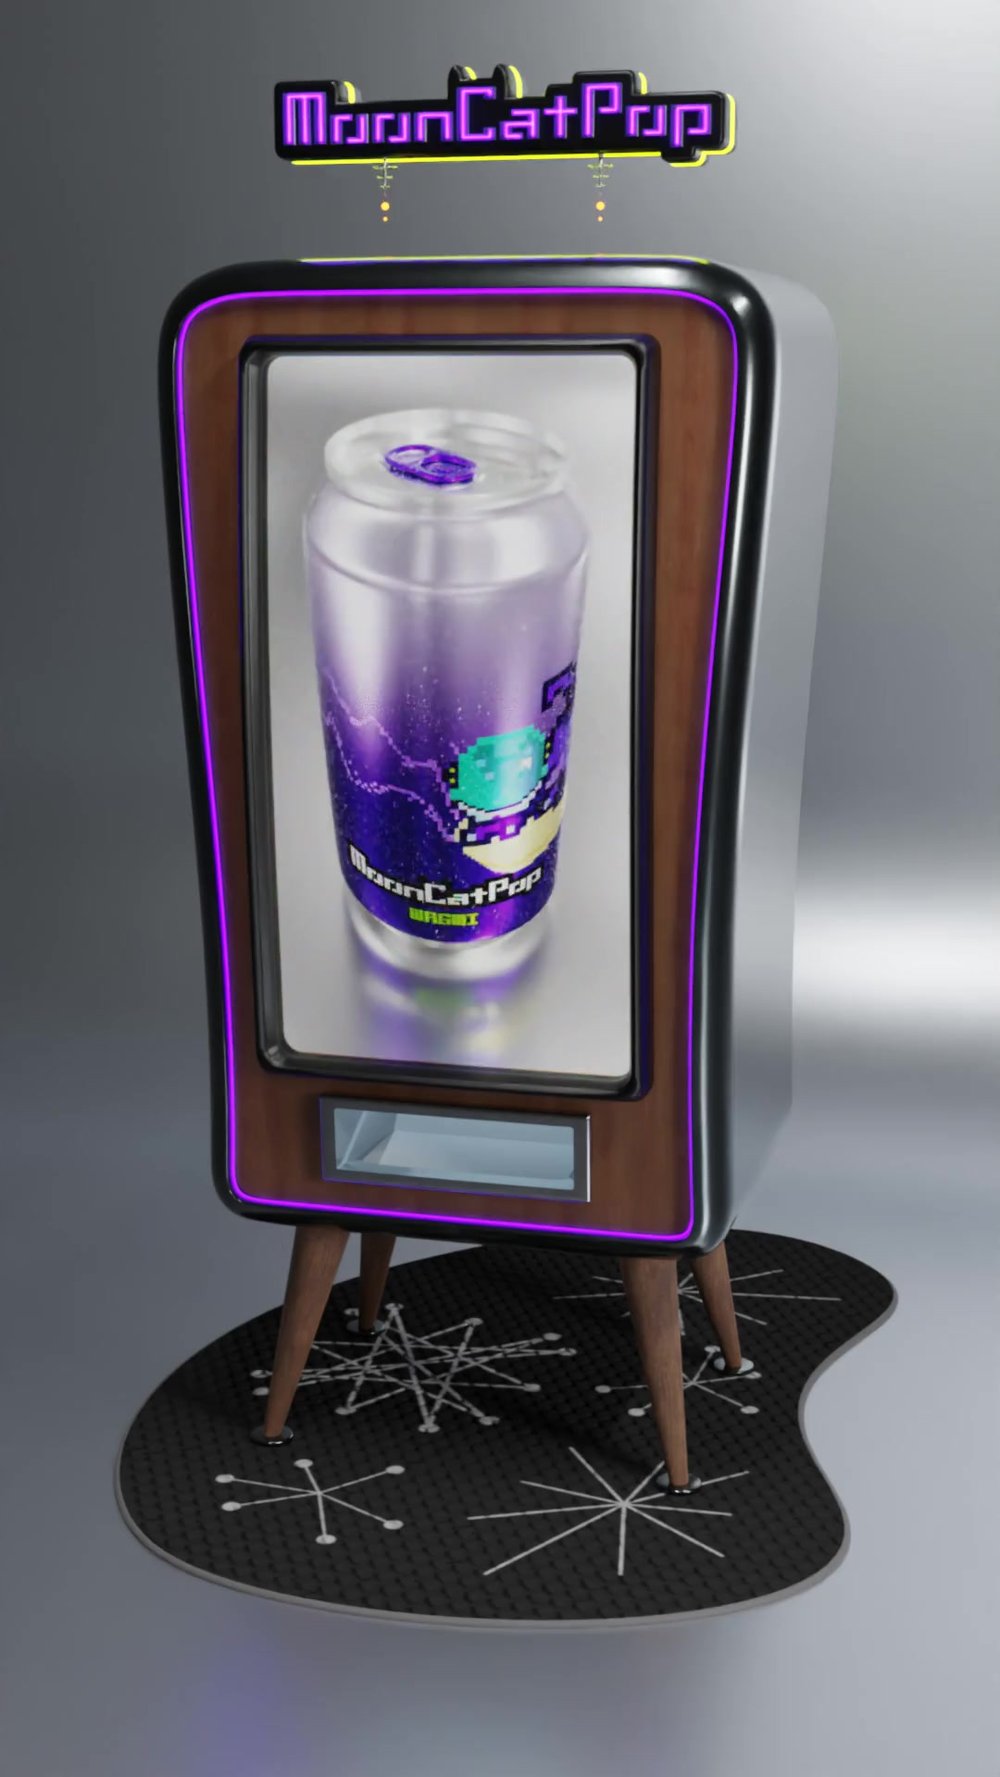 WAGMI Vending Machine